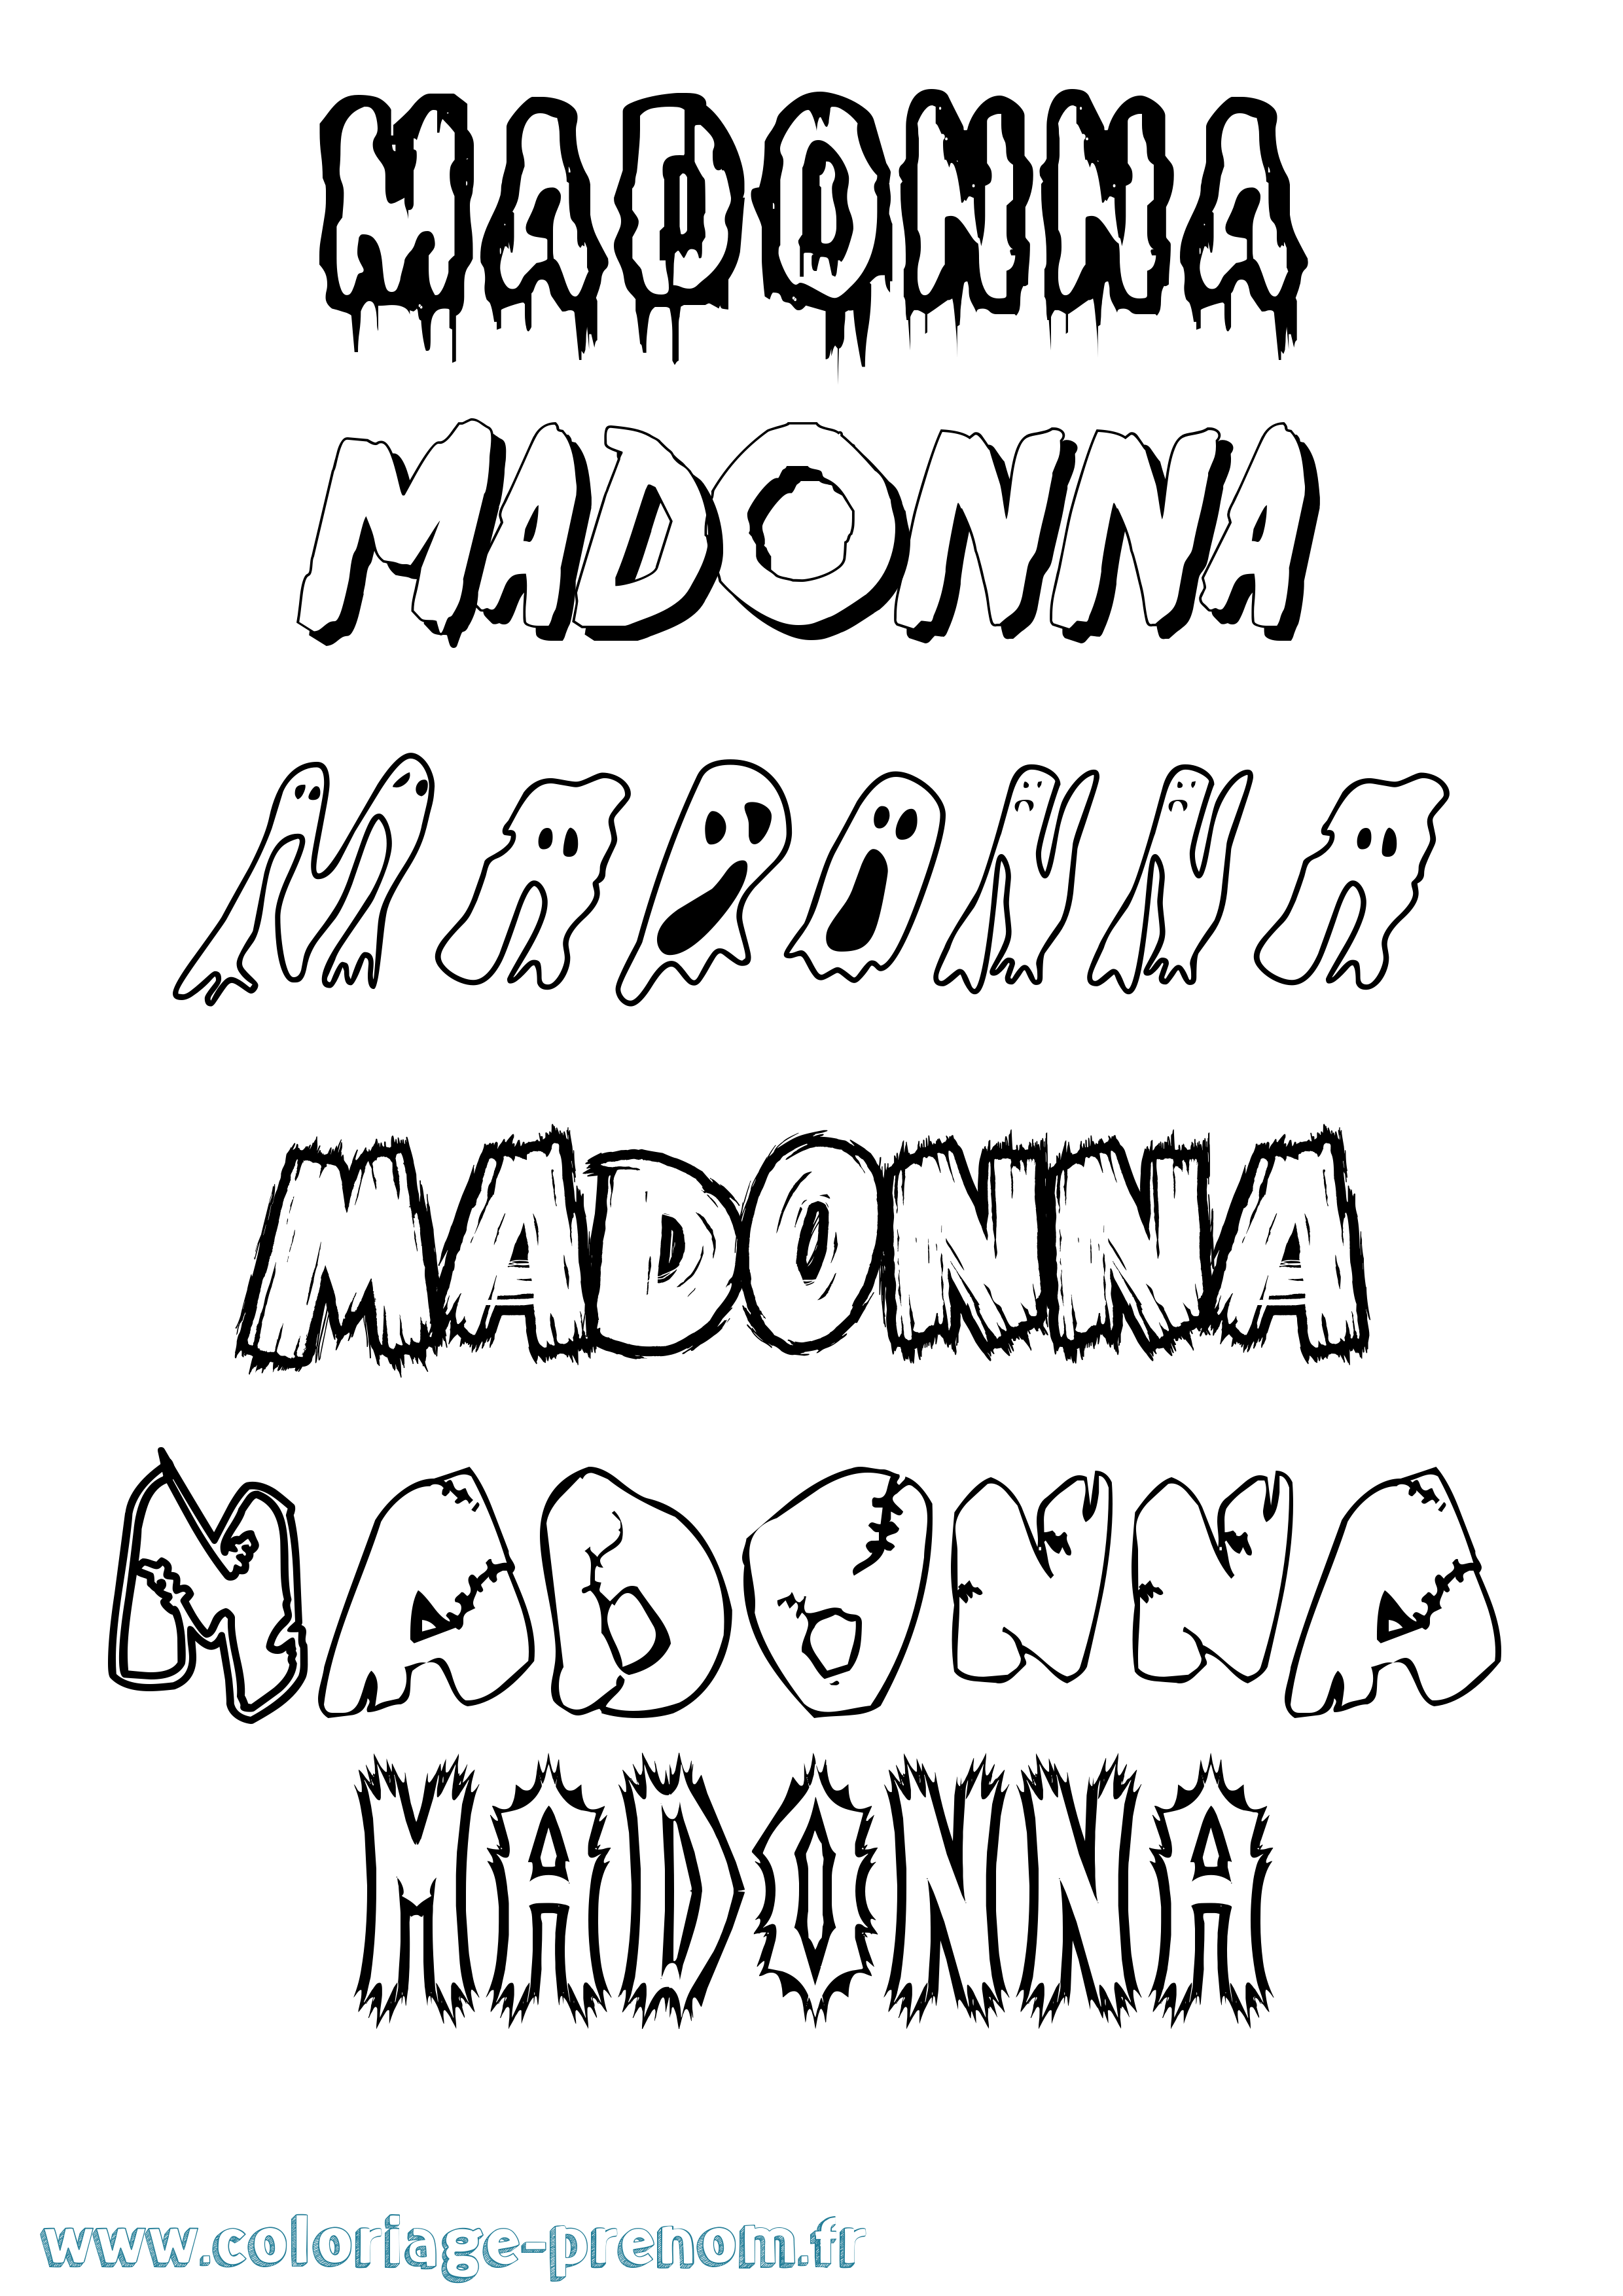 Coloriage prénom Madonna Frisson